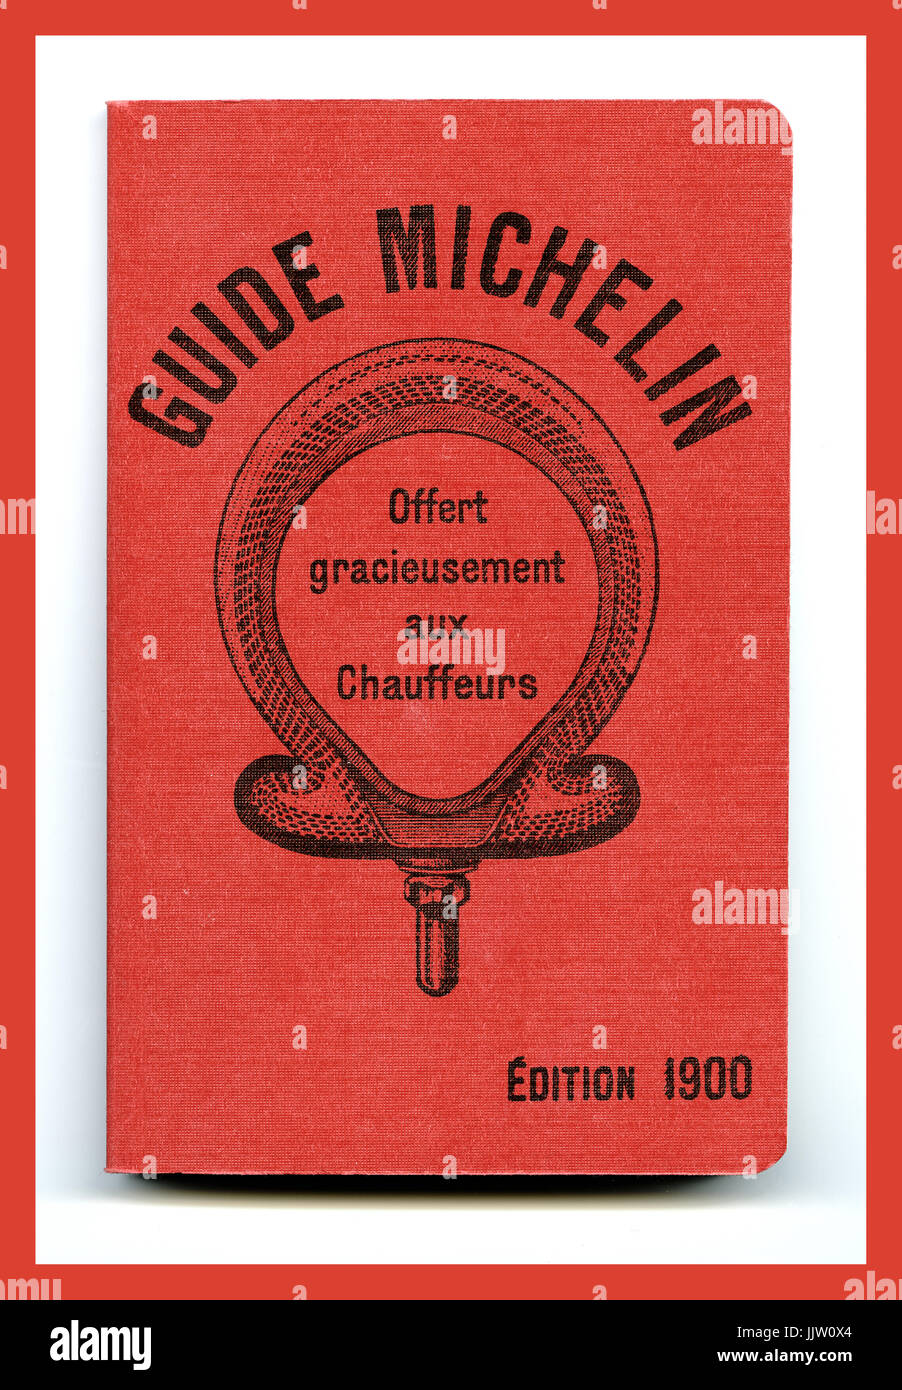 In assoluto la prima guida Michelin è stata creata dai fratelli Michelin nel 1900 e 35.000 copie sono state stampate per la fiera mondiale di Parigi Francia 'offert gracieusement aux autisti/ reimpression du premier guide rouge Parigi Francia Foto Stock